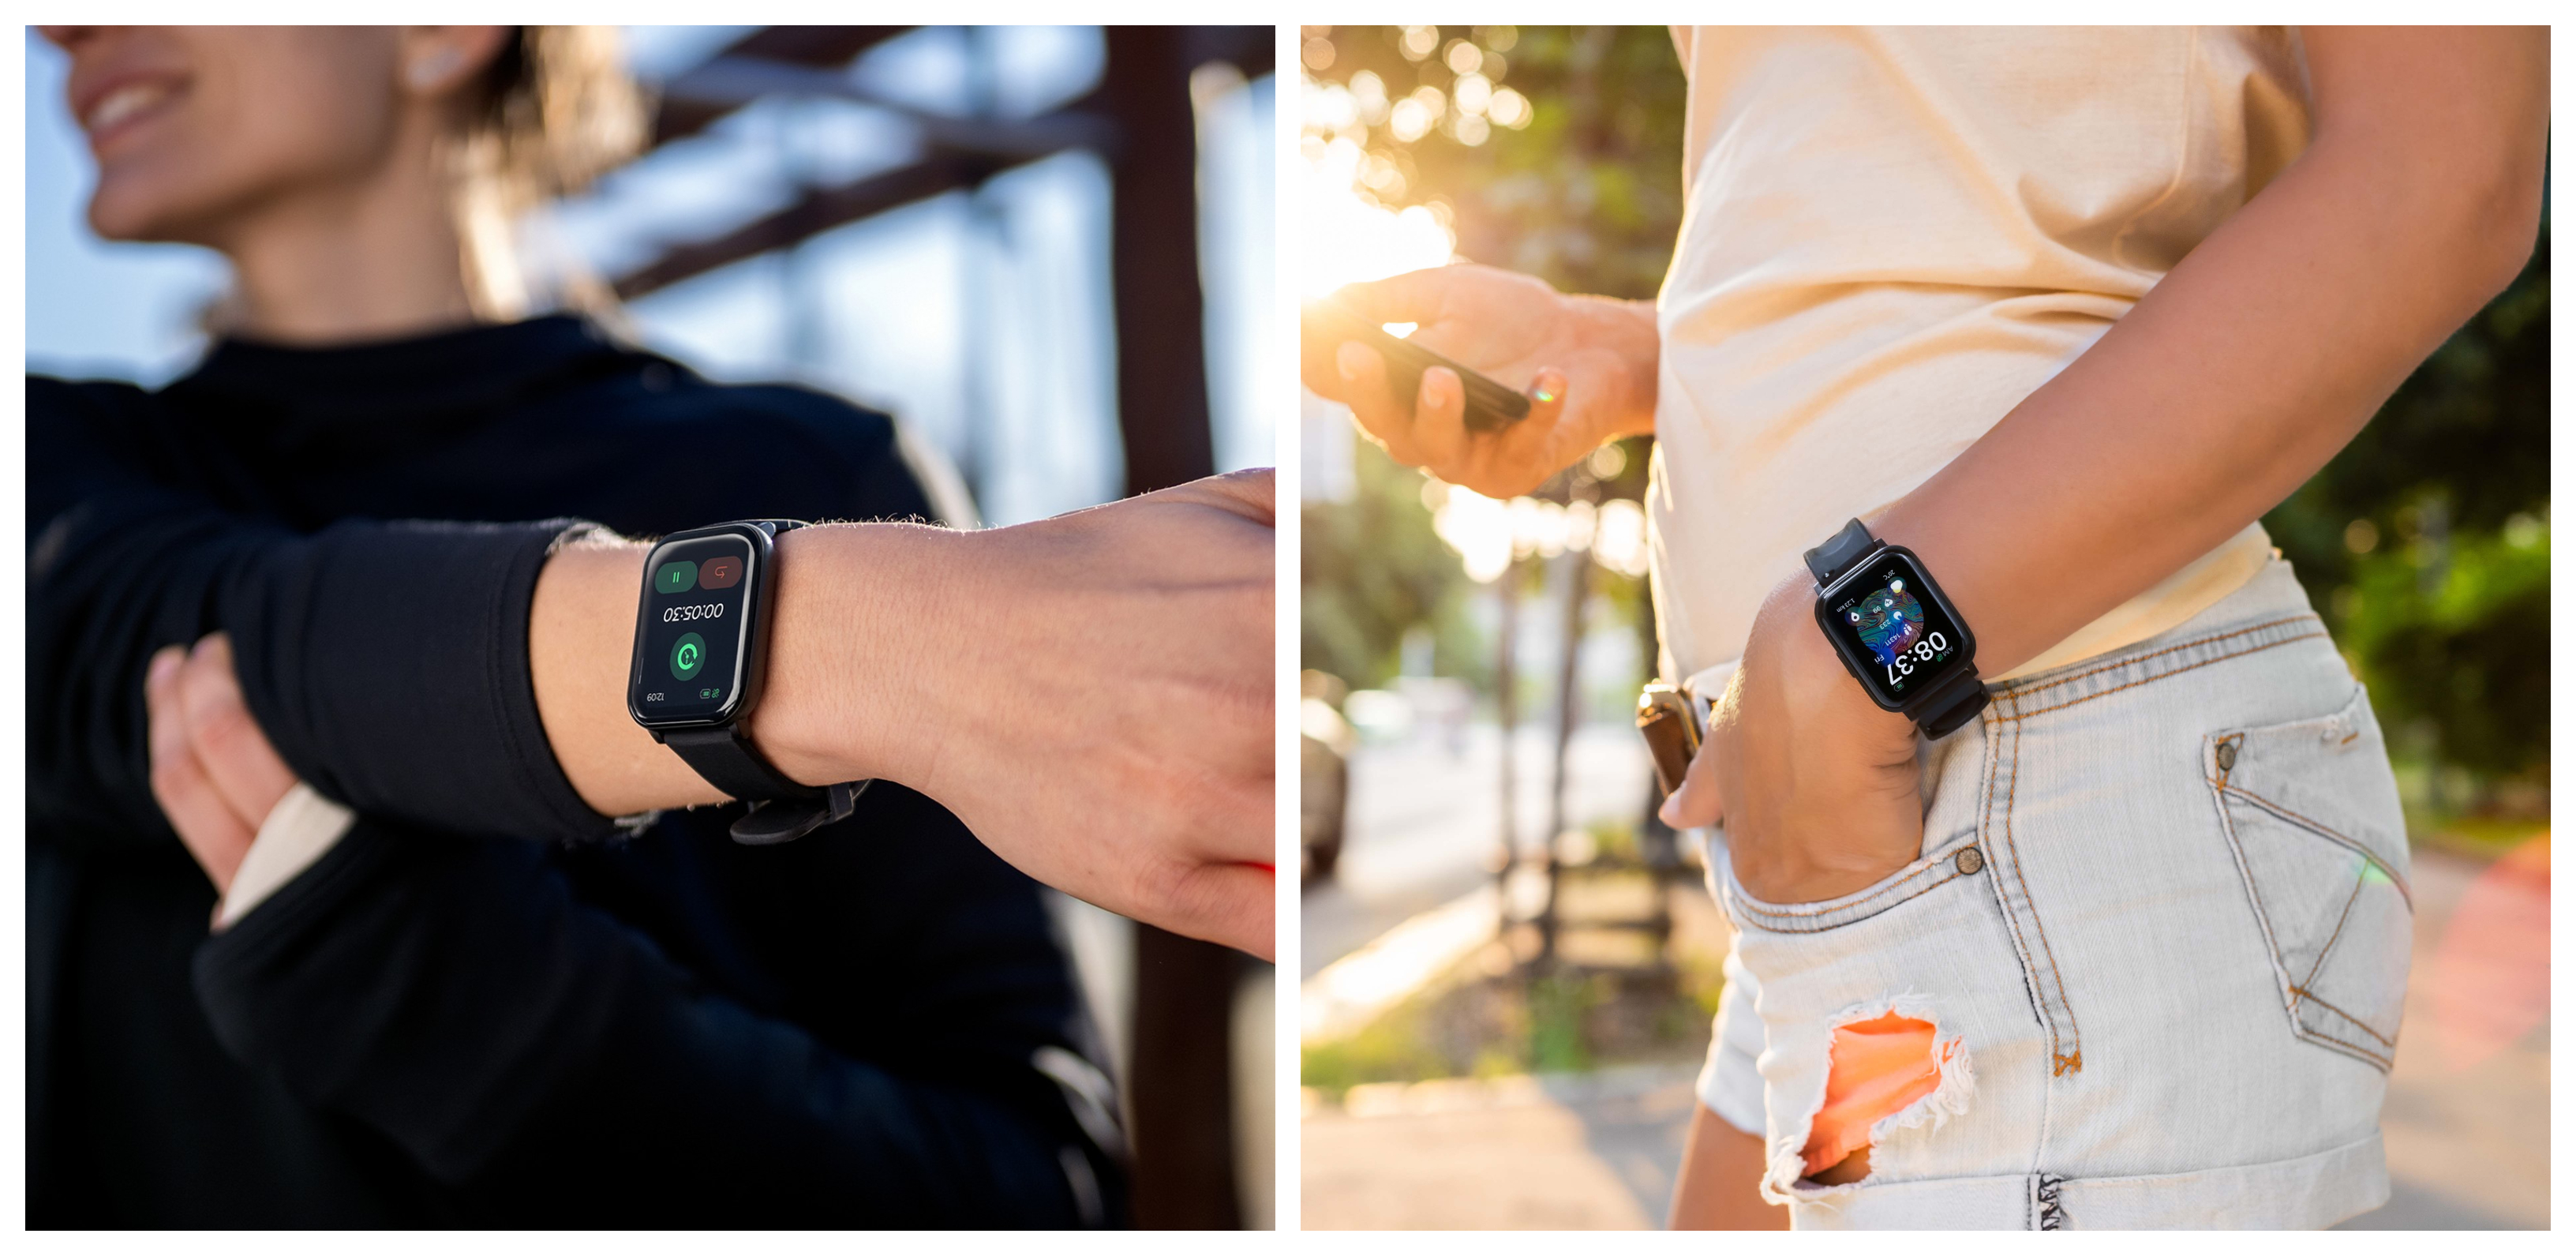 Chytré hodinky Niceboy X-Fit Watch Lite 3 zaznamenávají celou řadu hodnot, jako je například tepová frekvence (HRM), hodnota okysličení krve (SpO2) nebo krevní tlak (EKG).